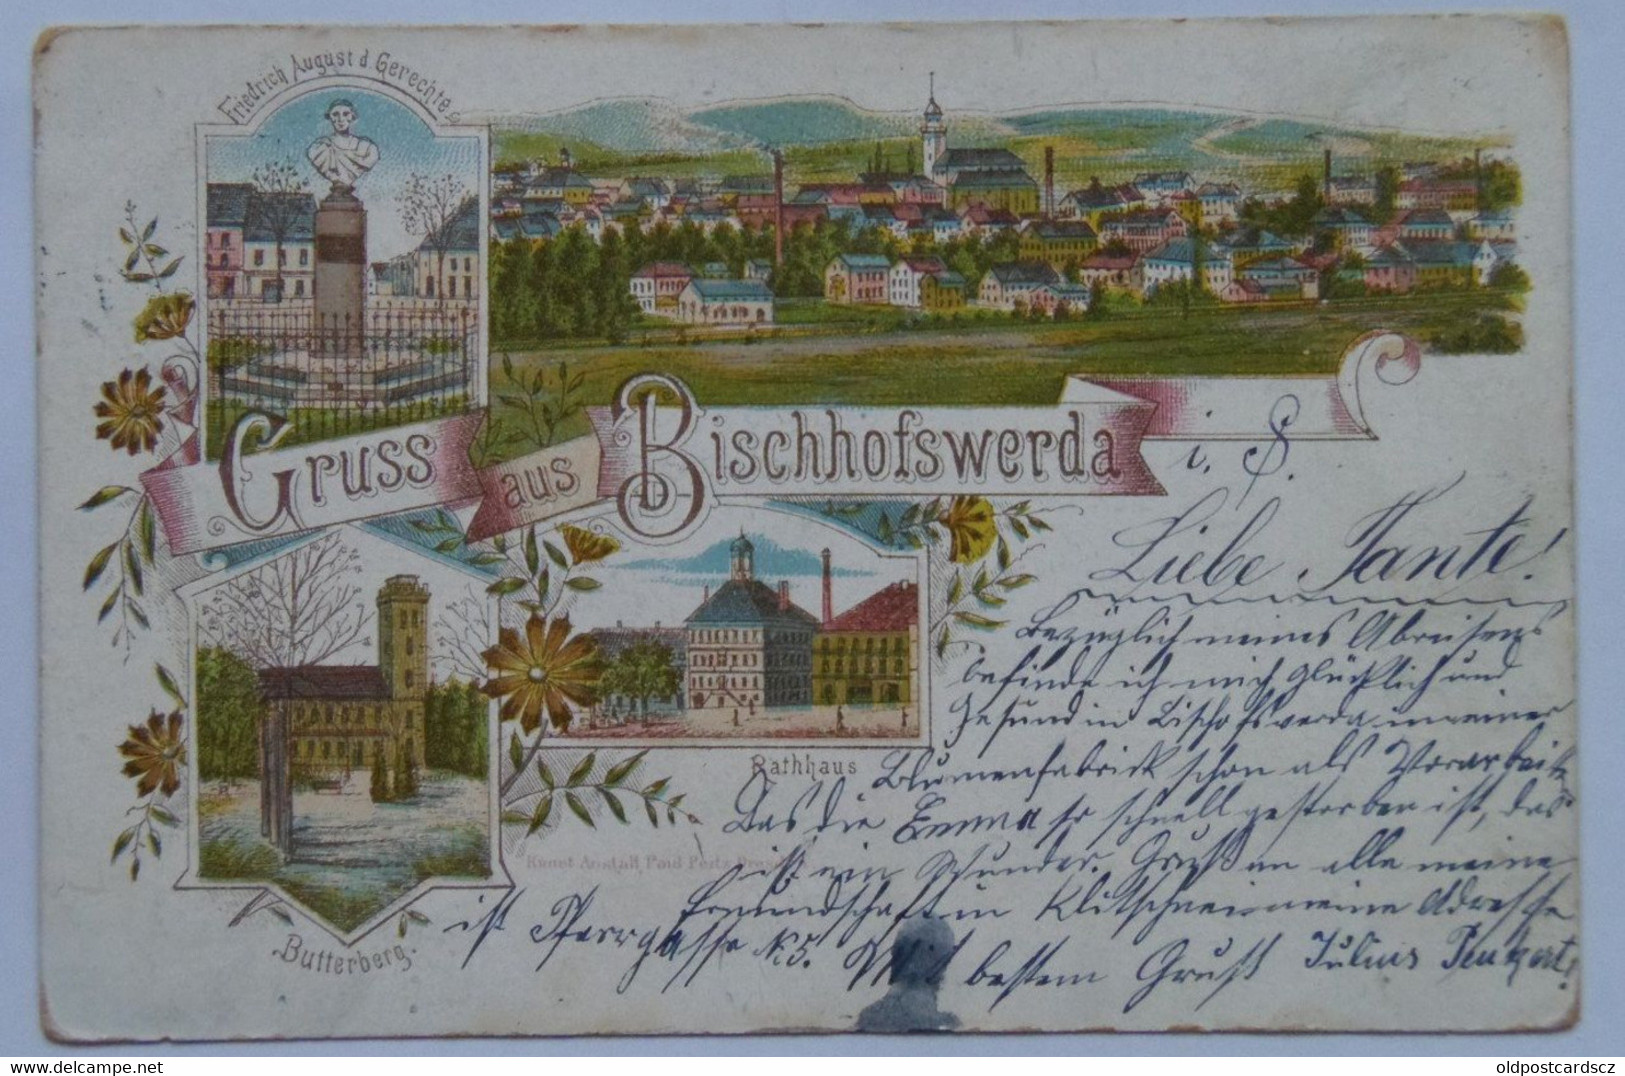 Germany 32 1897 Bischofswerda General View Town Hall Rathaus Friedrich August D. Gerechte Monument Butterberg - Bischofswerda